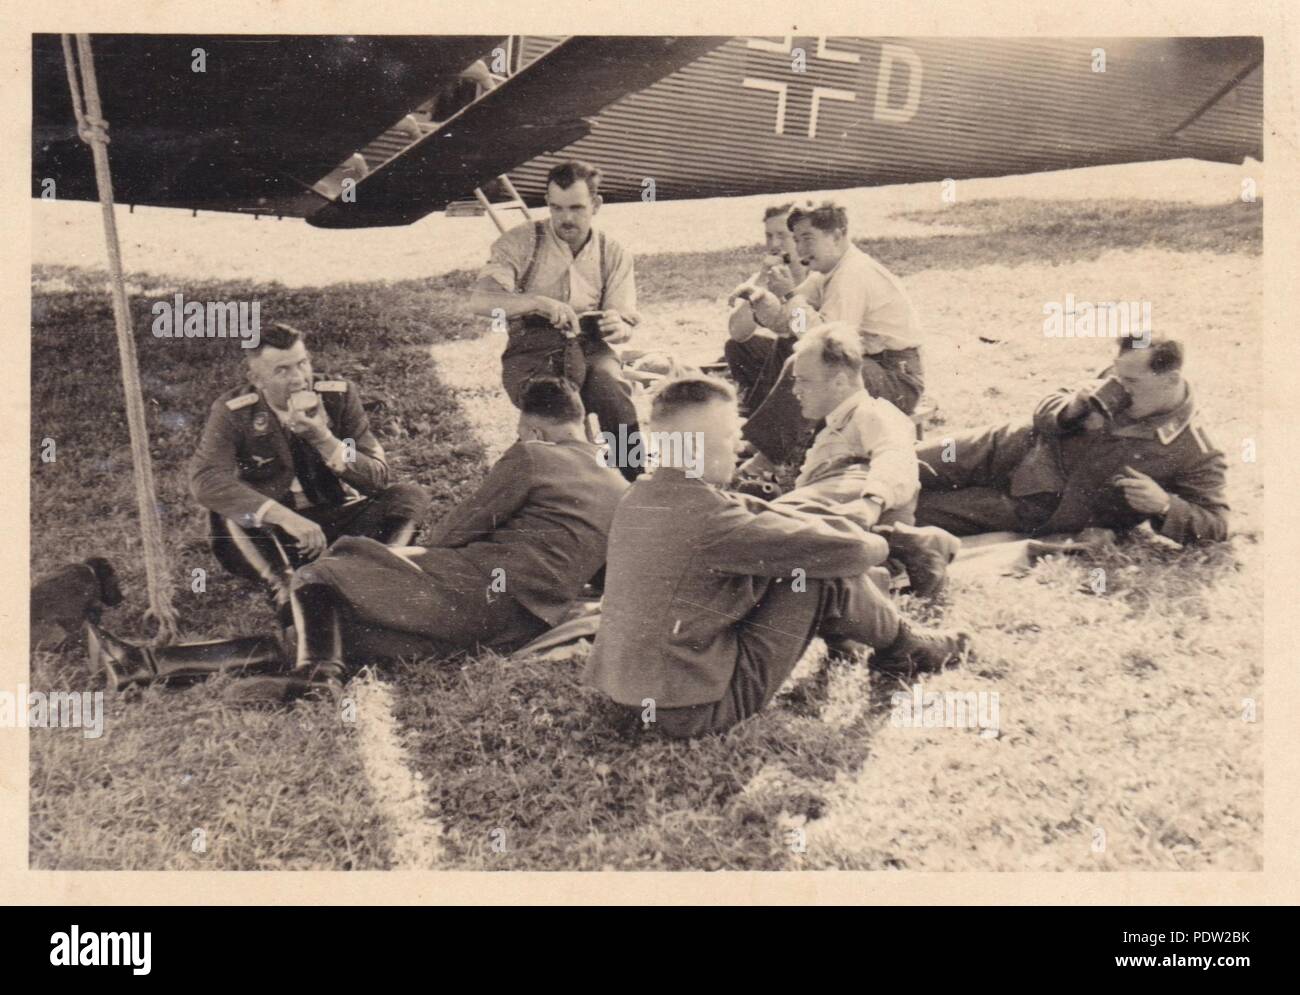 Bild aus dem Fotoalbum von Oberfeldwebel Karl gendner von 1. Staffel, Kampfgeschwader 40: Karl Gendner (rechts hinten) und anderen Besatzungsmitglieder aus 3./KGzbV 9 zwischen den Missionen neben ihrem Junkers Ju 52/3 m Transportflugzeug in Krakau, Polen im September 1939 entspannen. Stockfoto